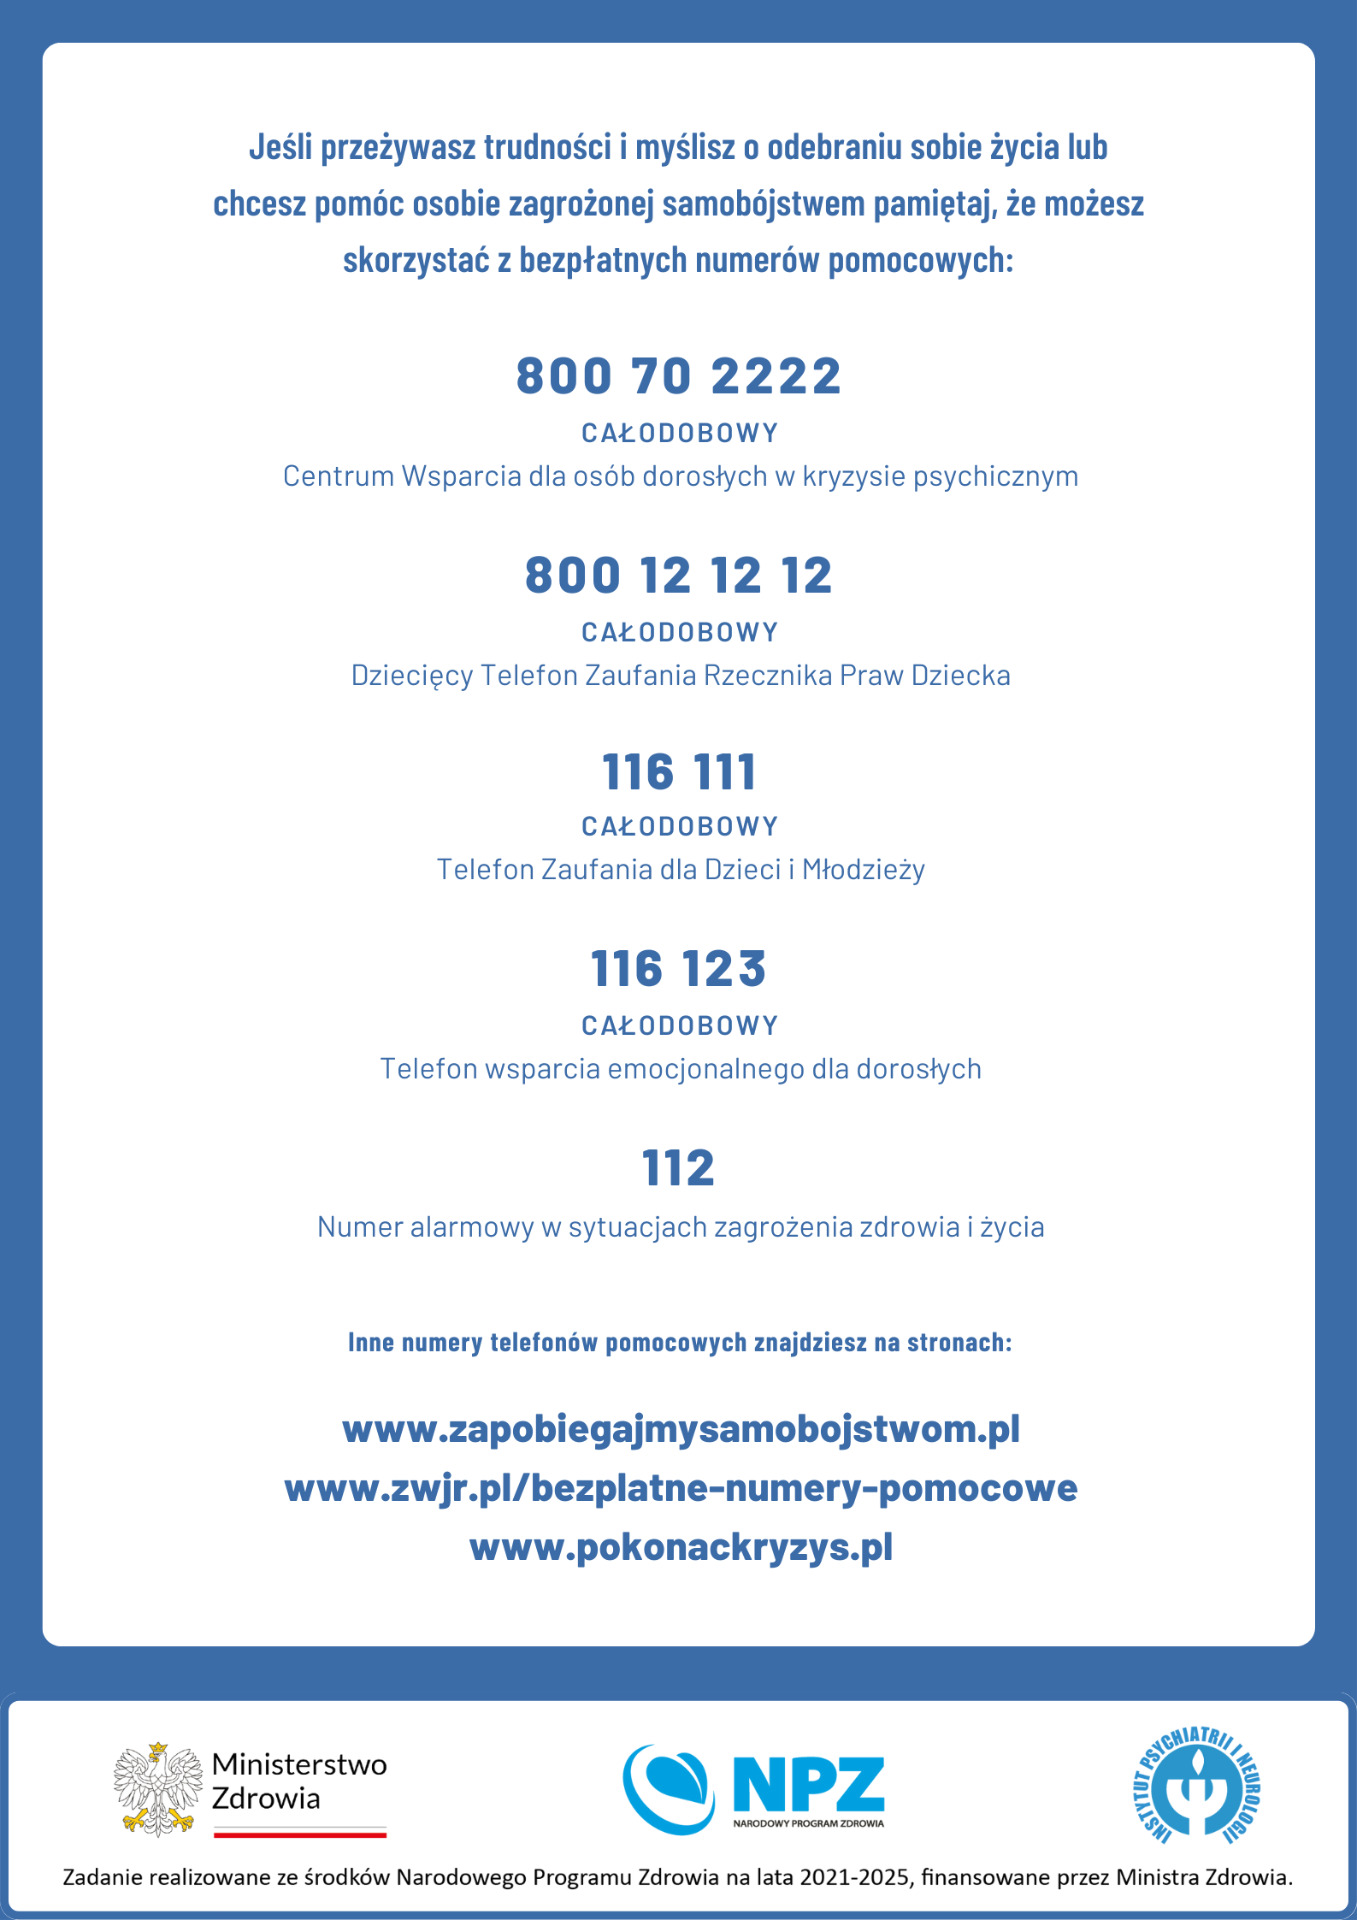 Numery telefonu dla osób szukających pomocy